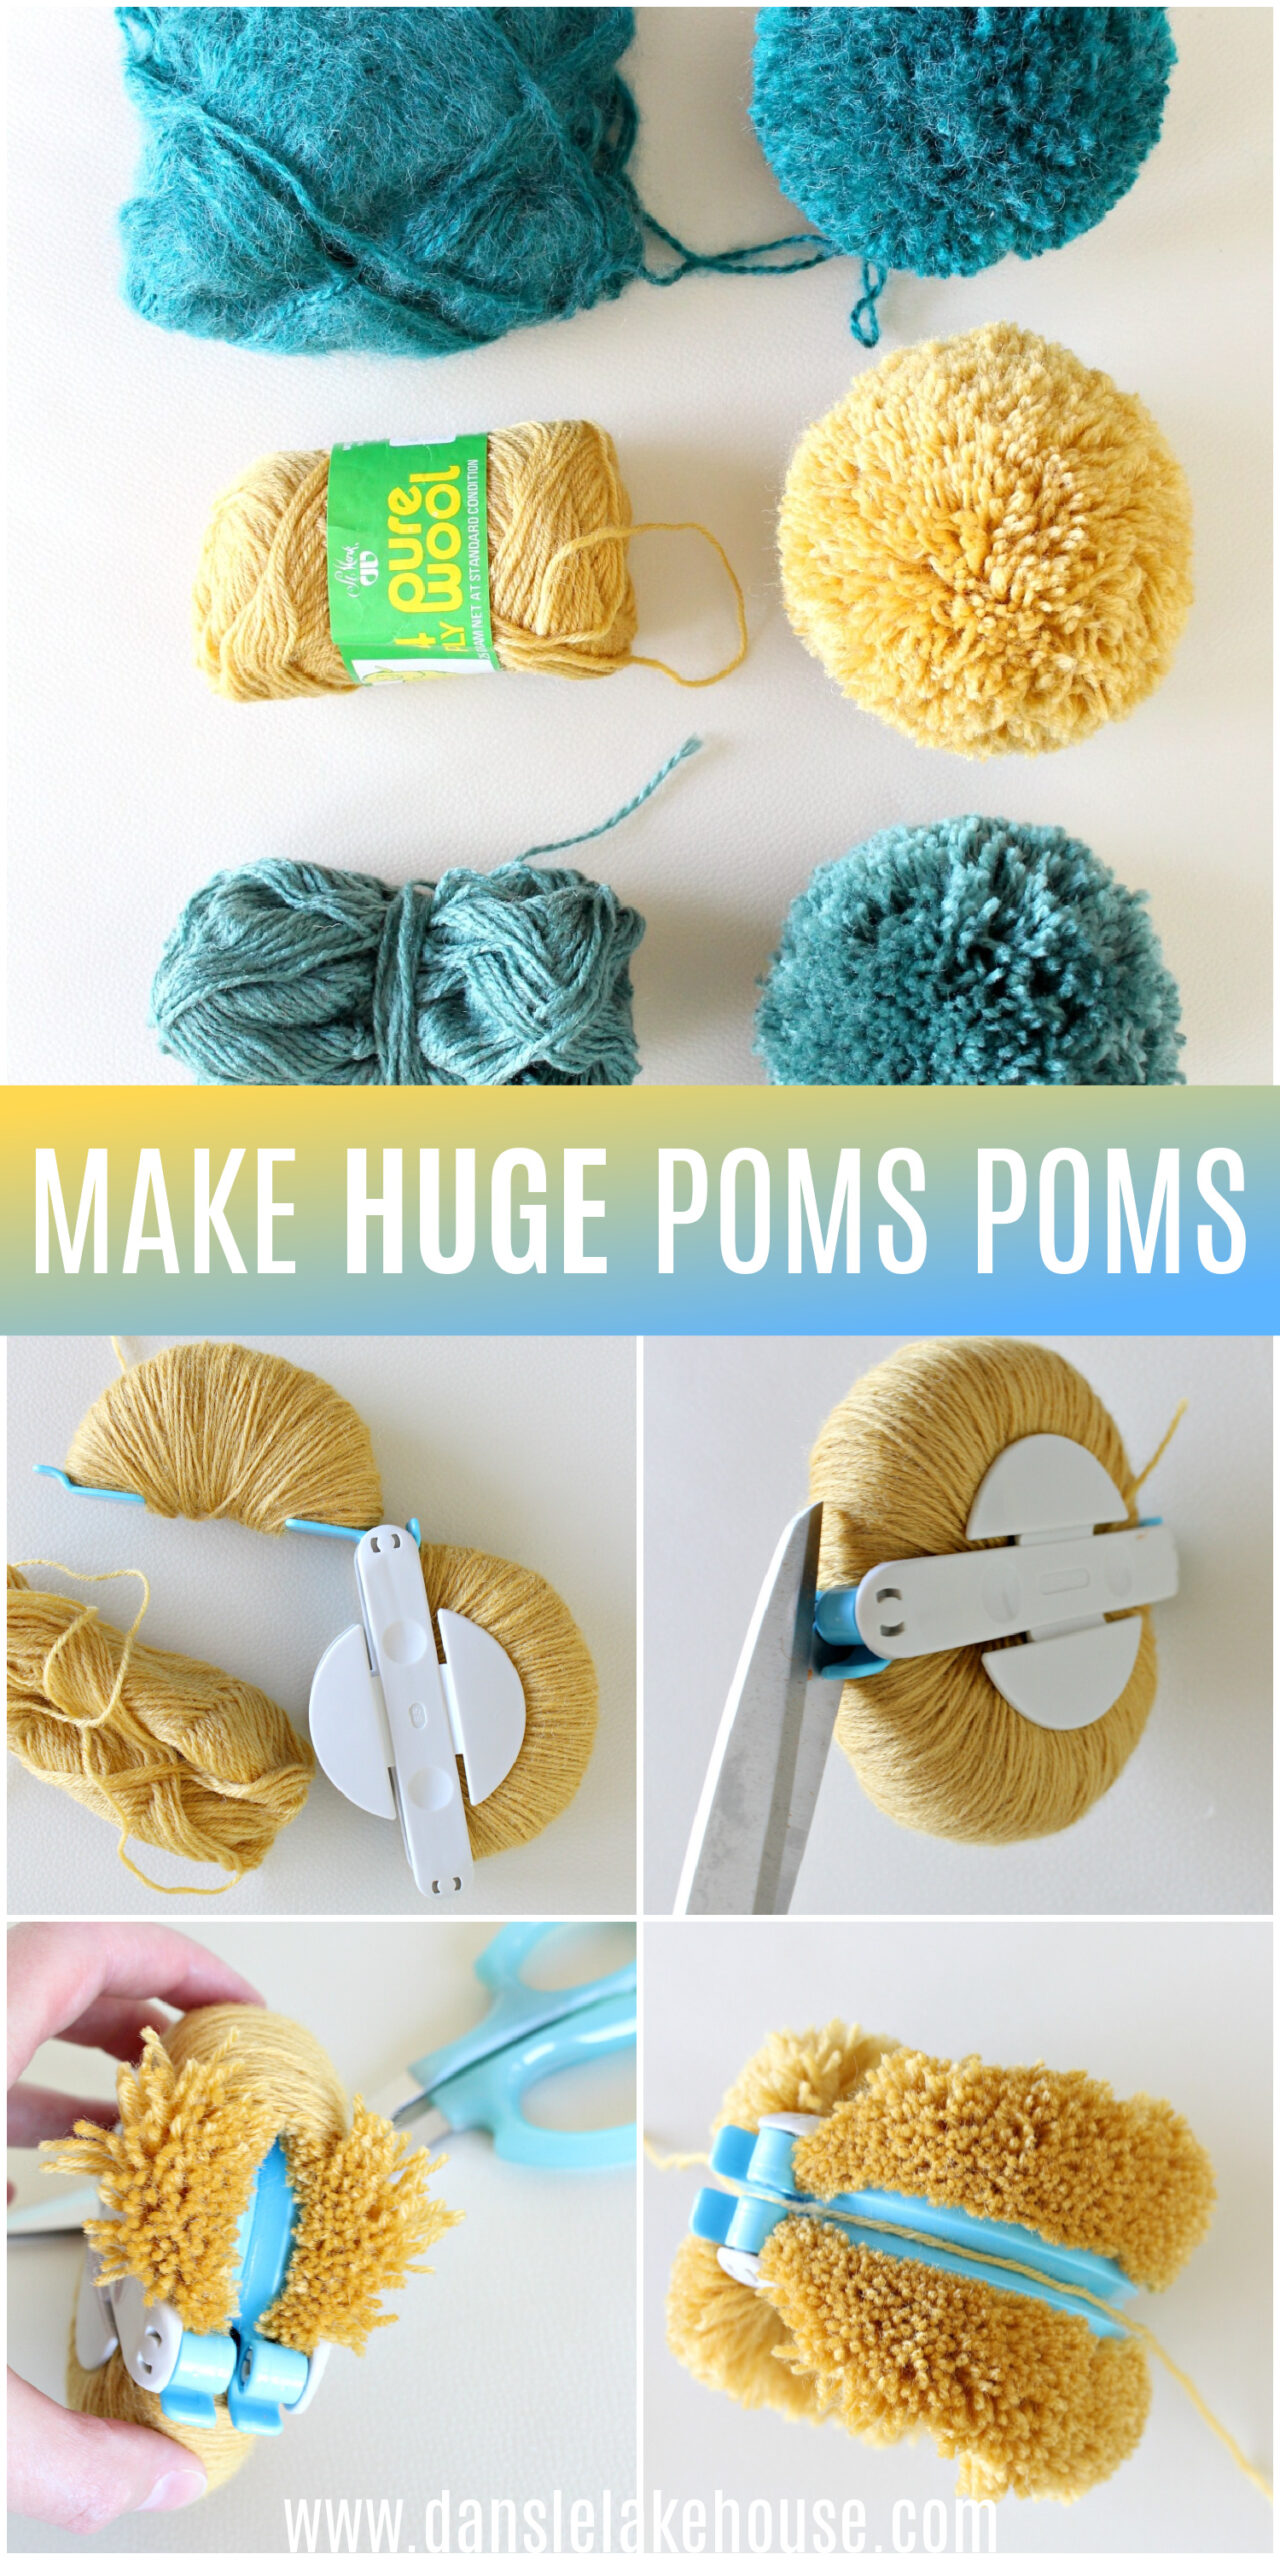 DIY Pom Poms | How to Make Giant Pom Poms